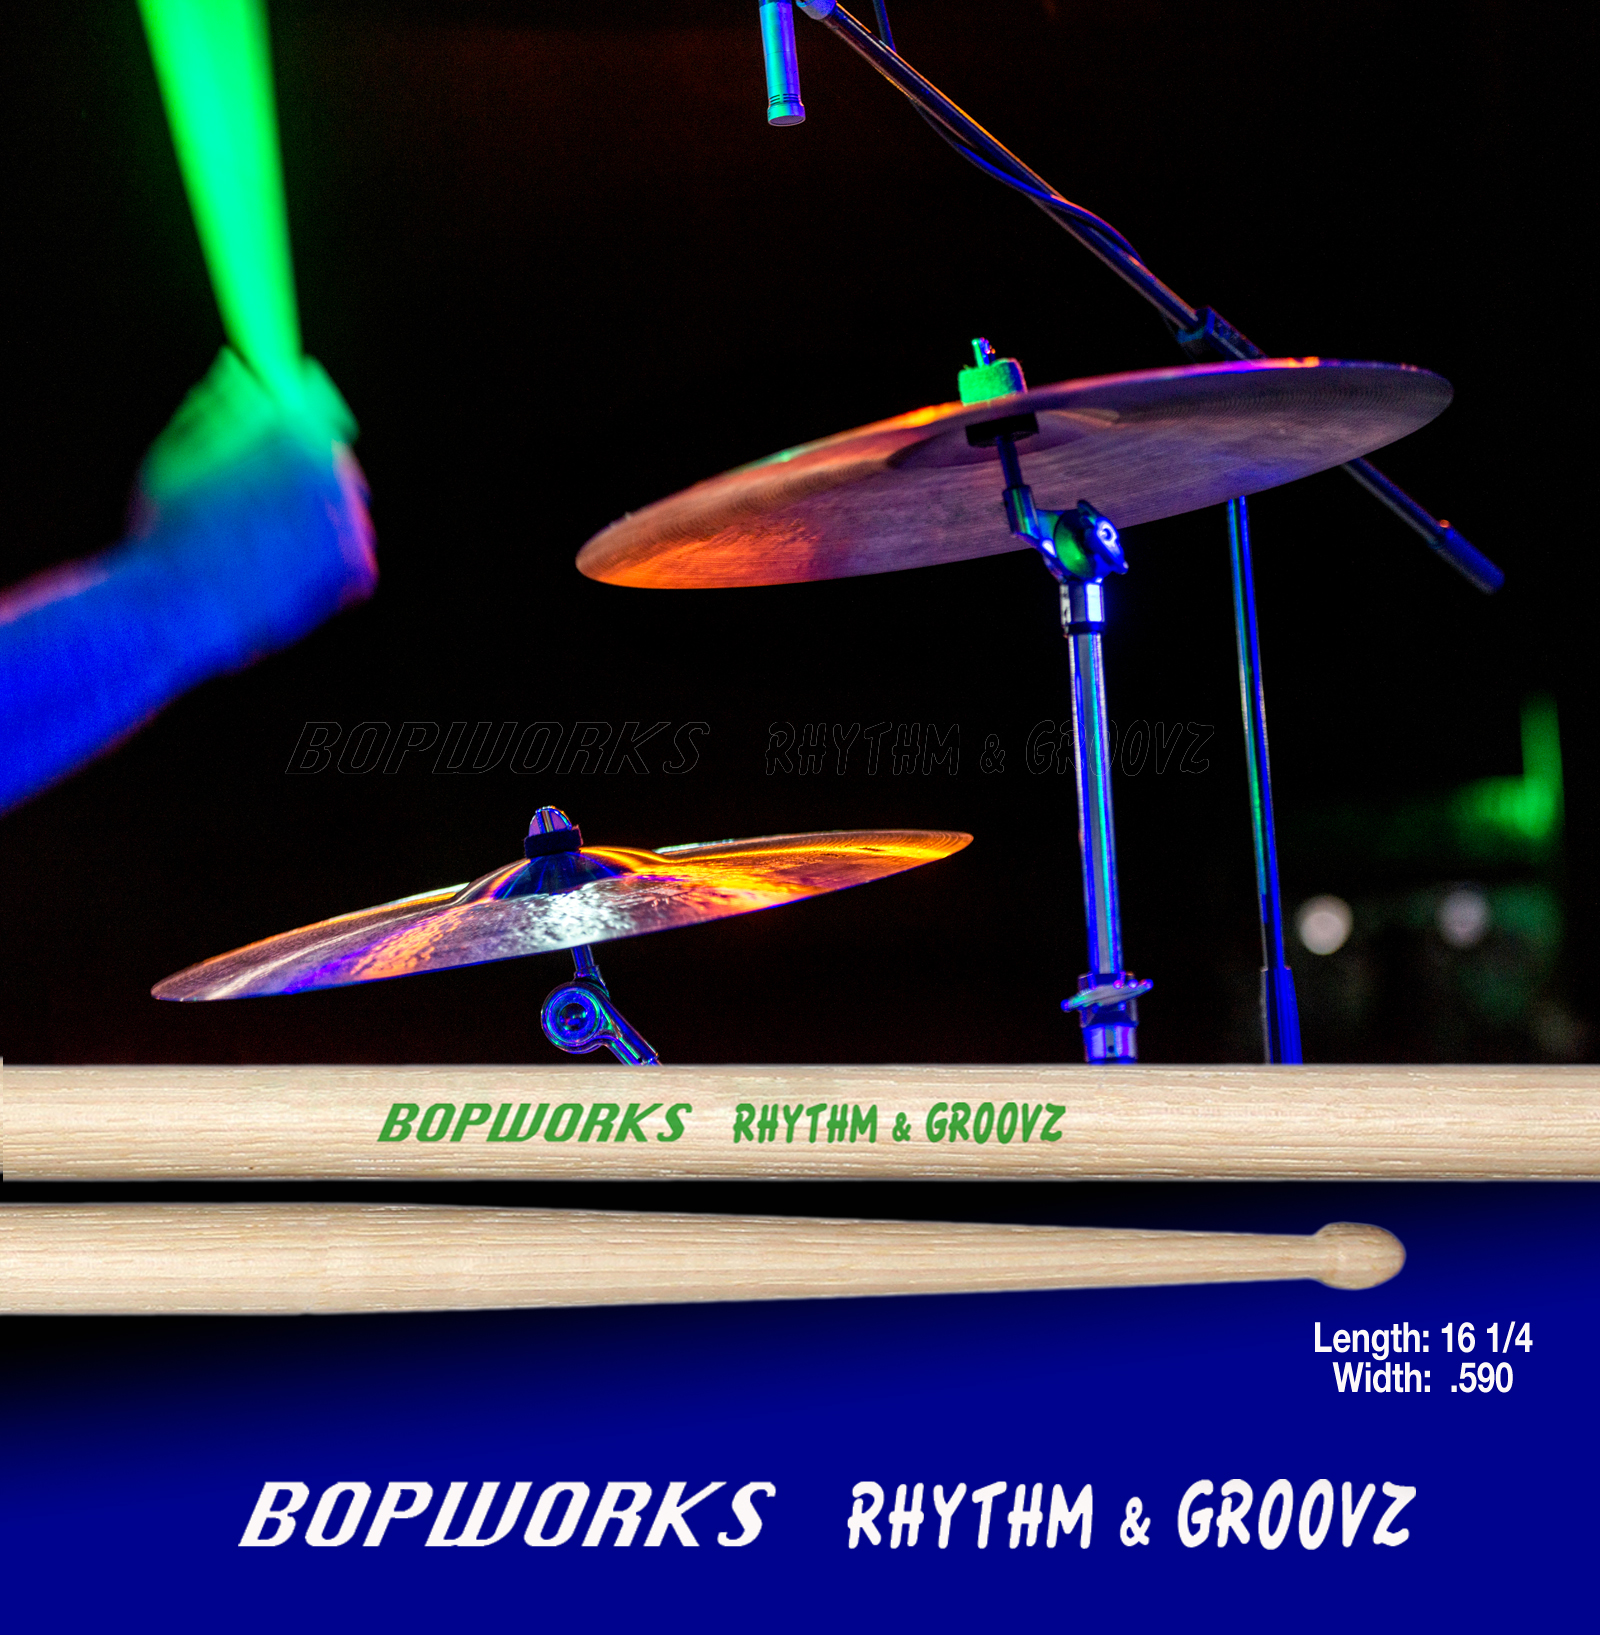 rhythm-groovz-for-ad-copy-2017.jpg